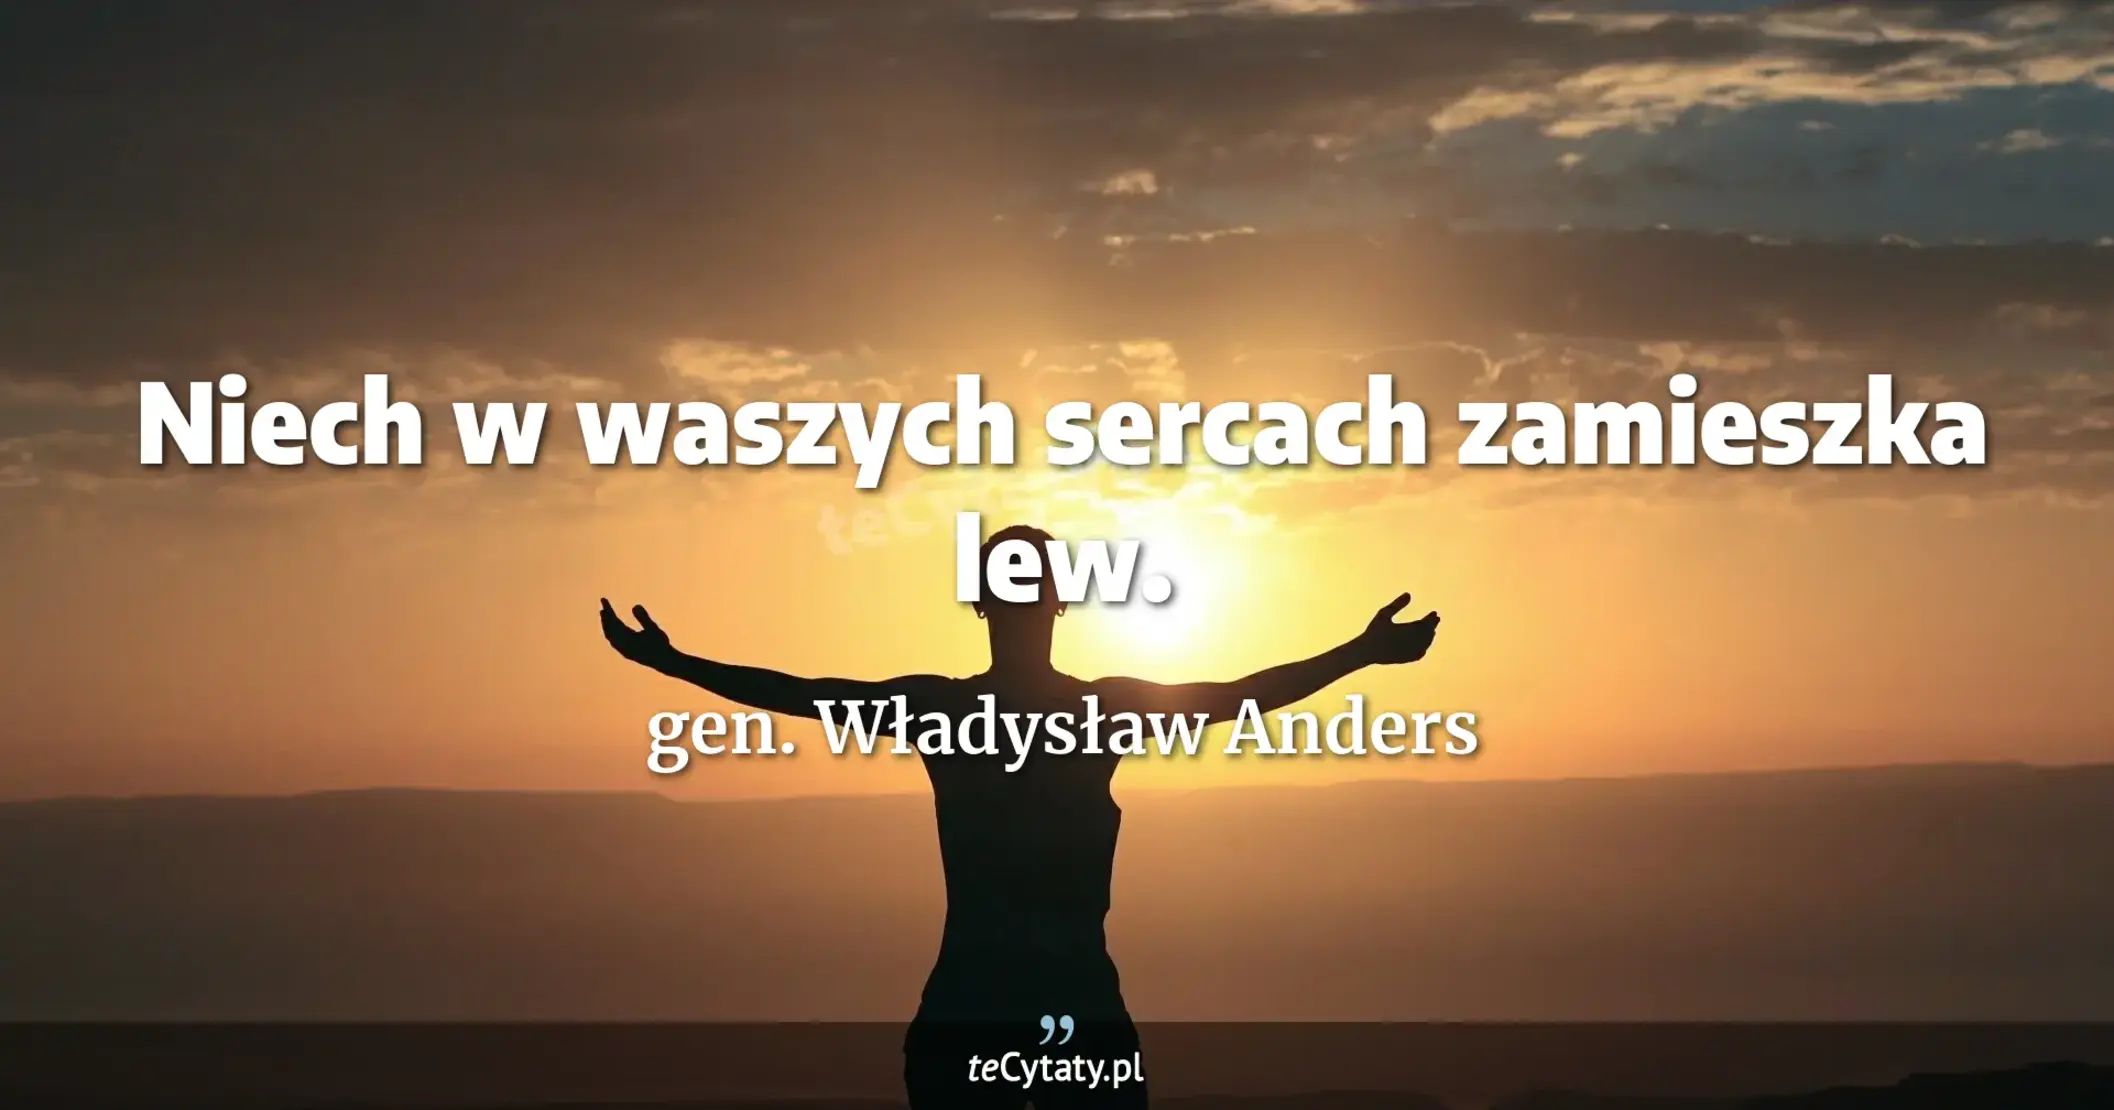 Niech w waszych sercach zamieszka lew. - gen. Władysław Anders